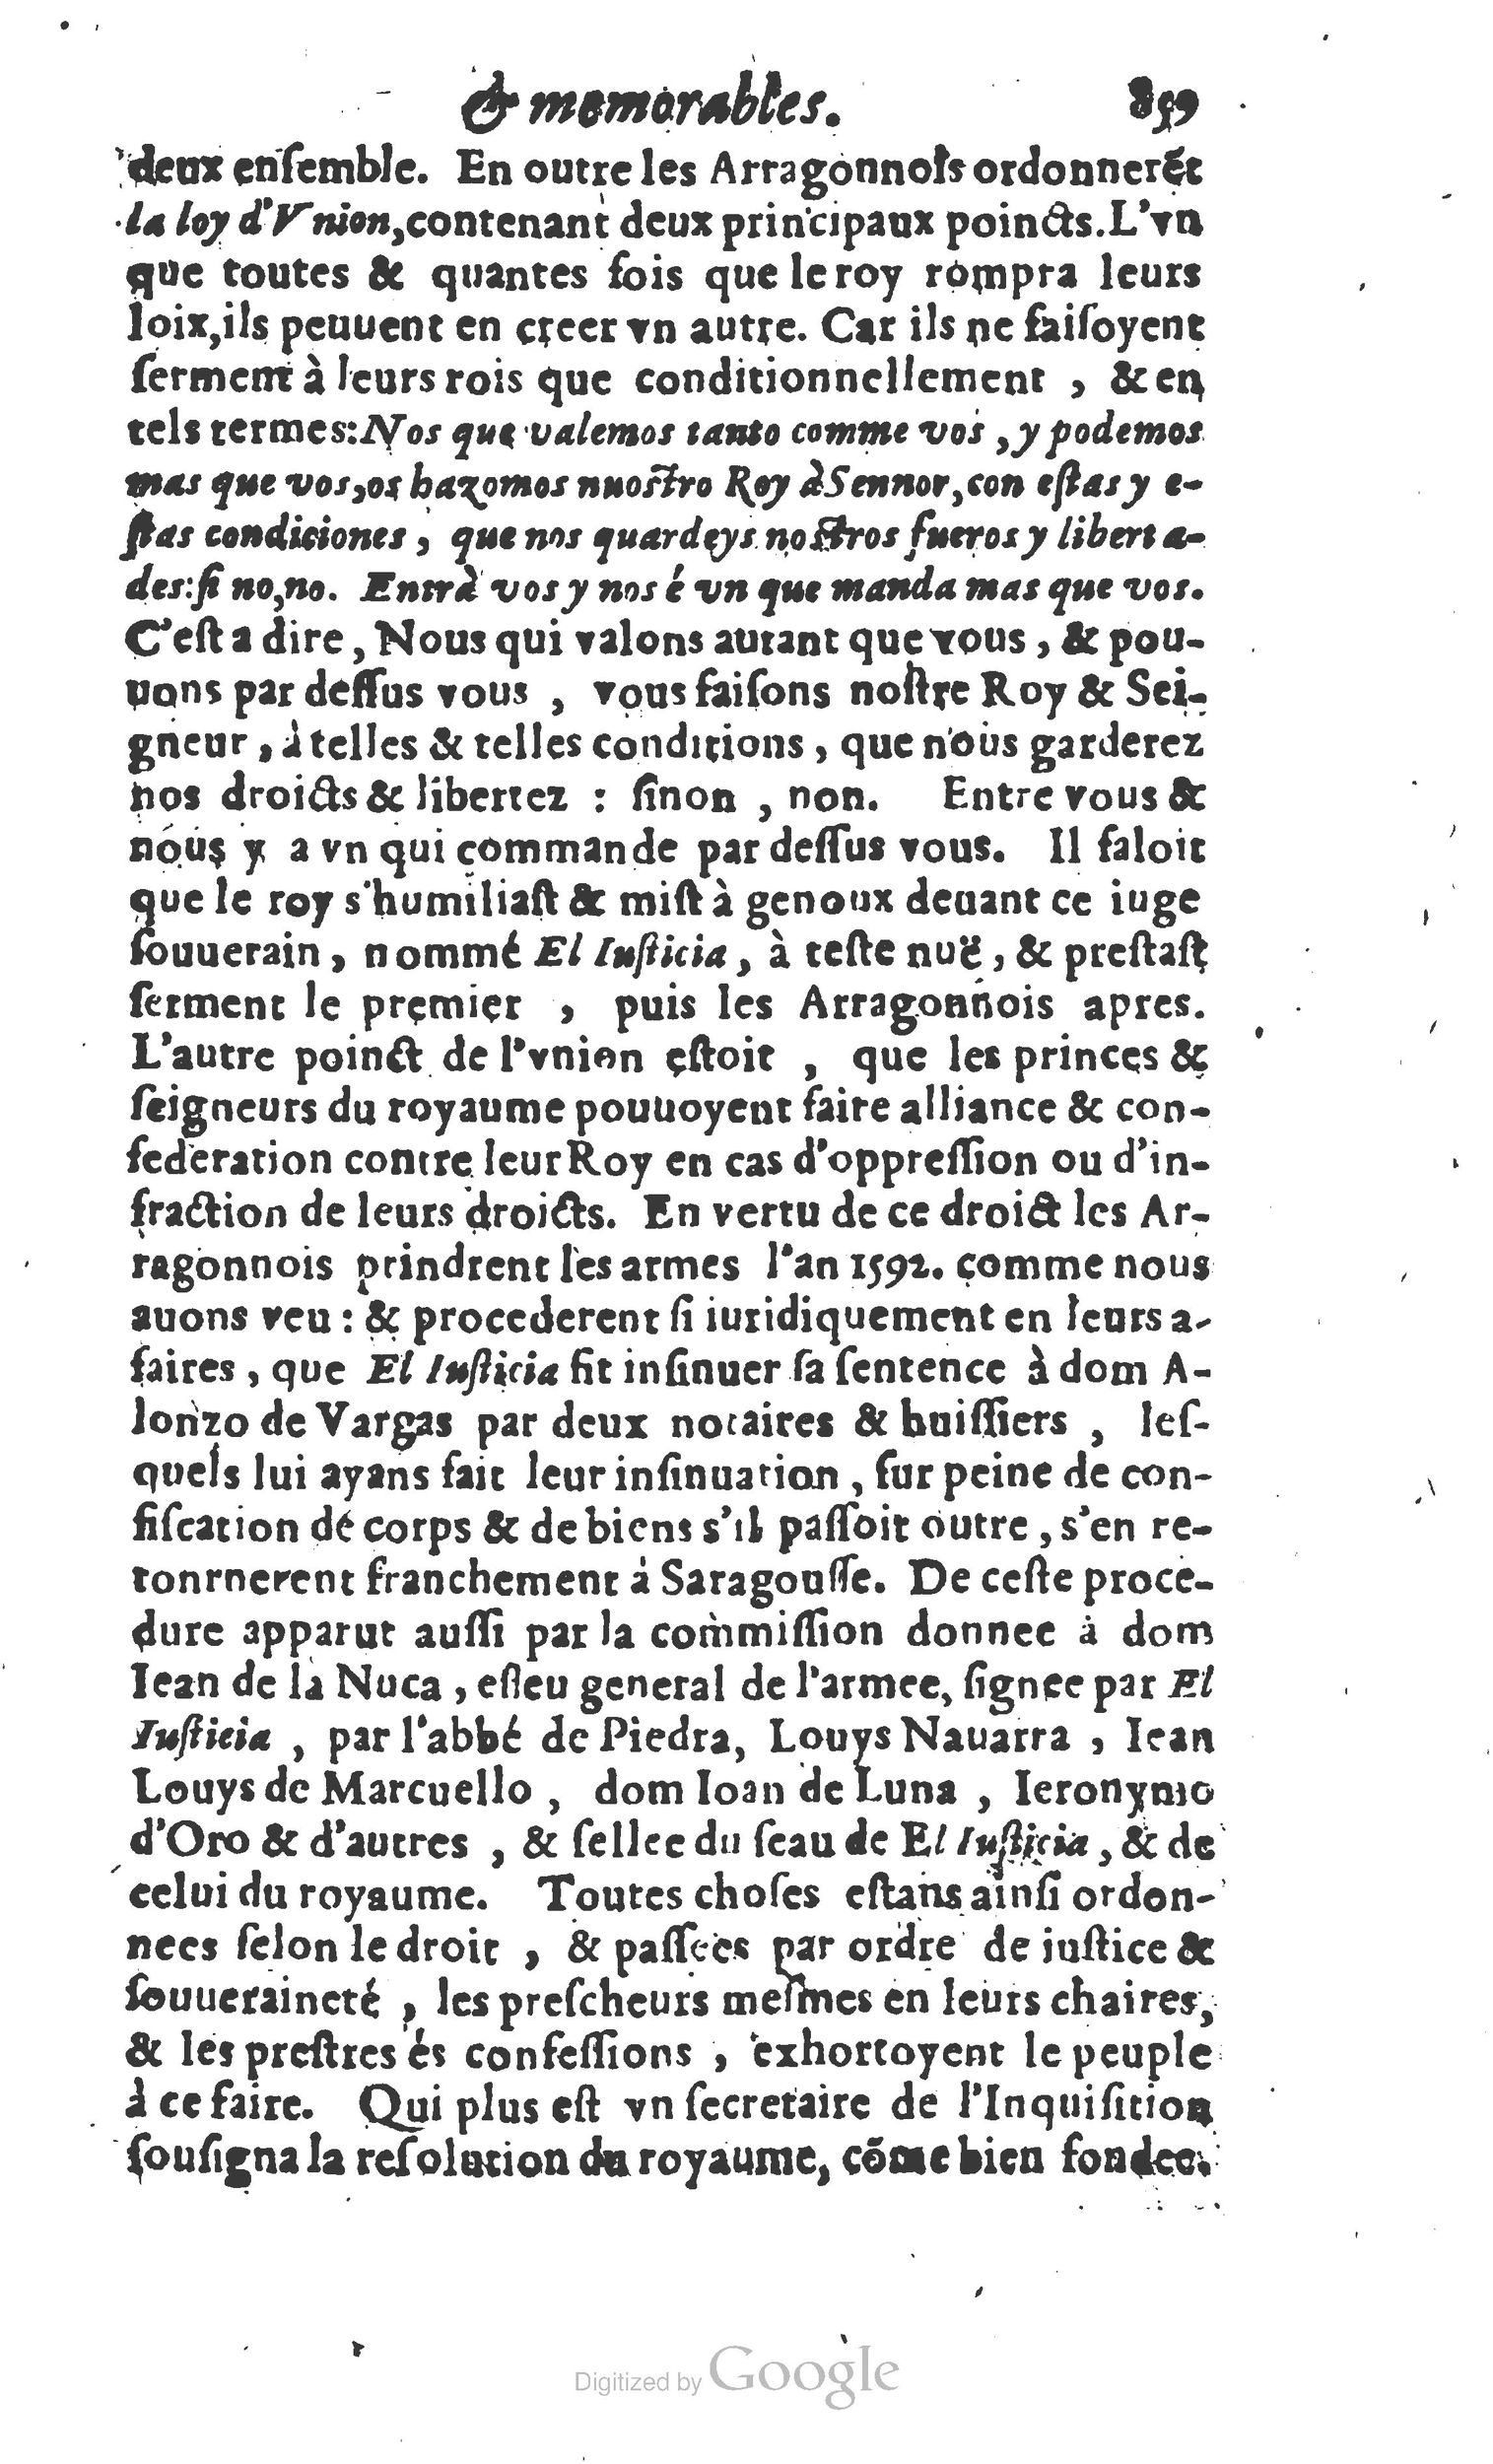 1610 Trésor d’histoires admirables et mémorables de nostre temps Marceau Princeton_Page_0880.jpg